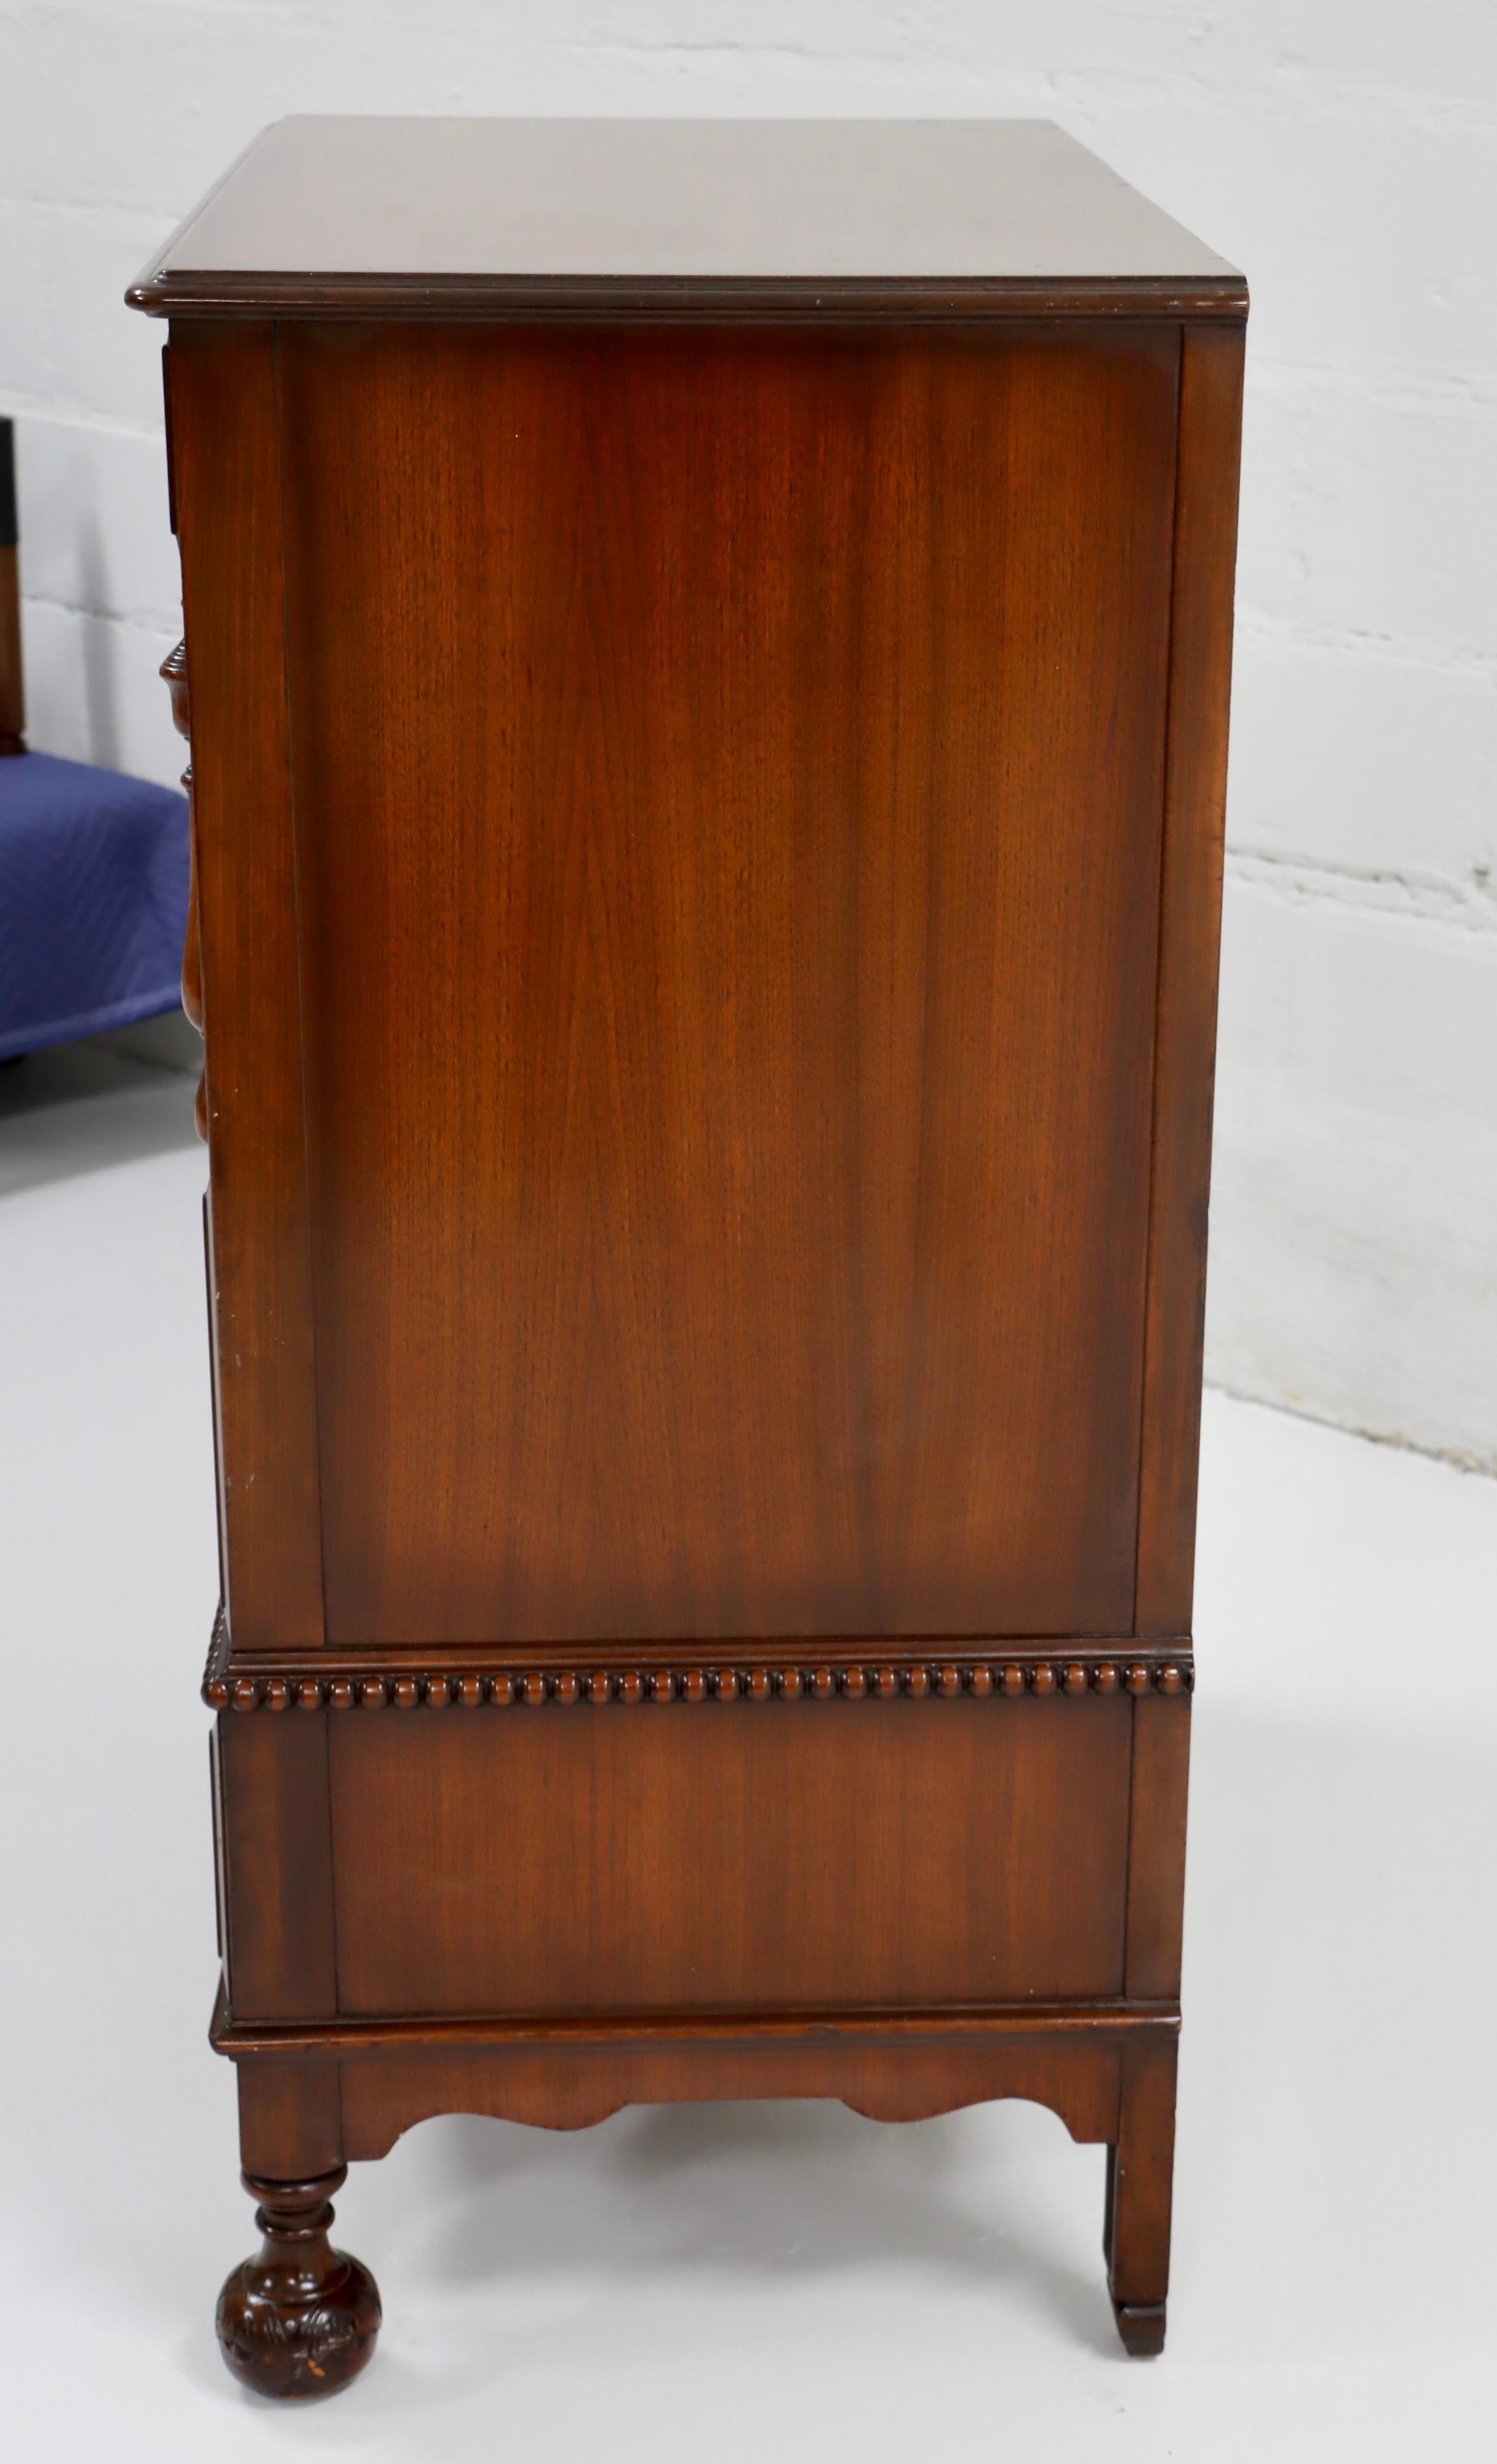 Laiton Commode haute des années 1940 par Berkey & Gay Furniture avec d'incroyables détails en bois sculpté